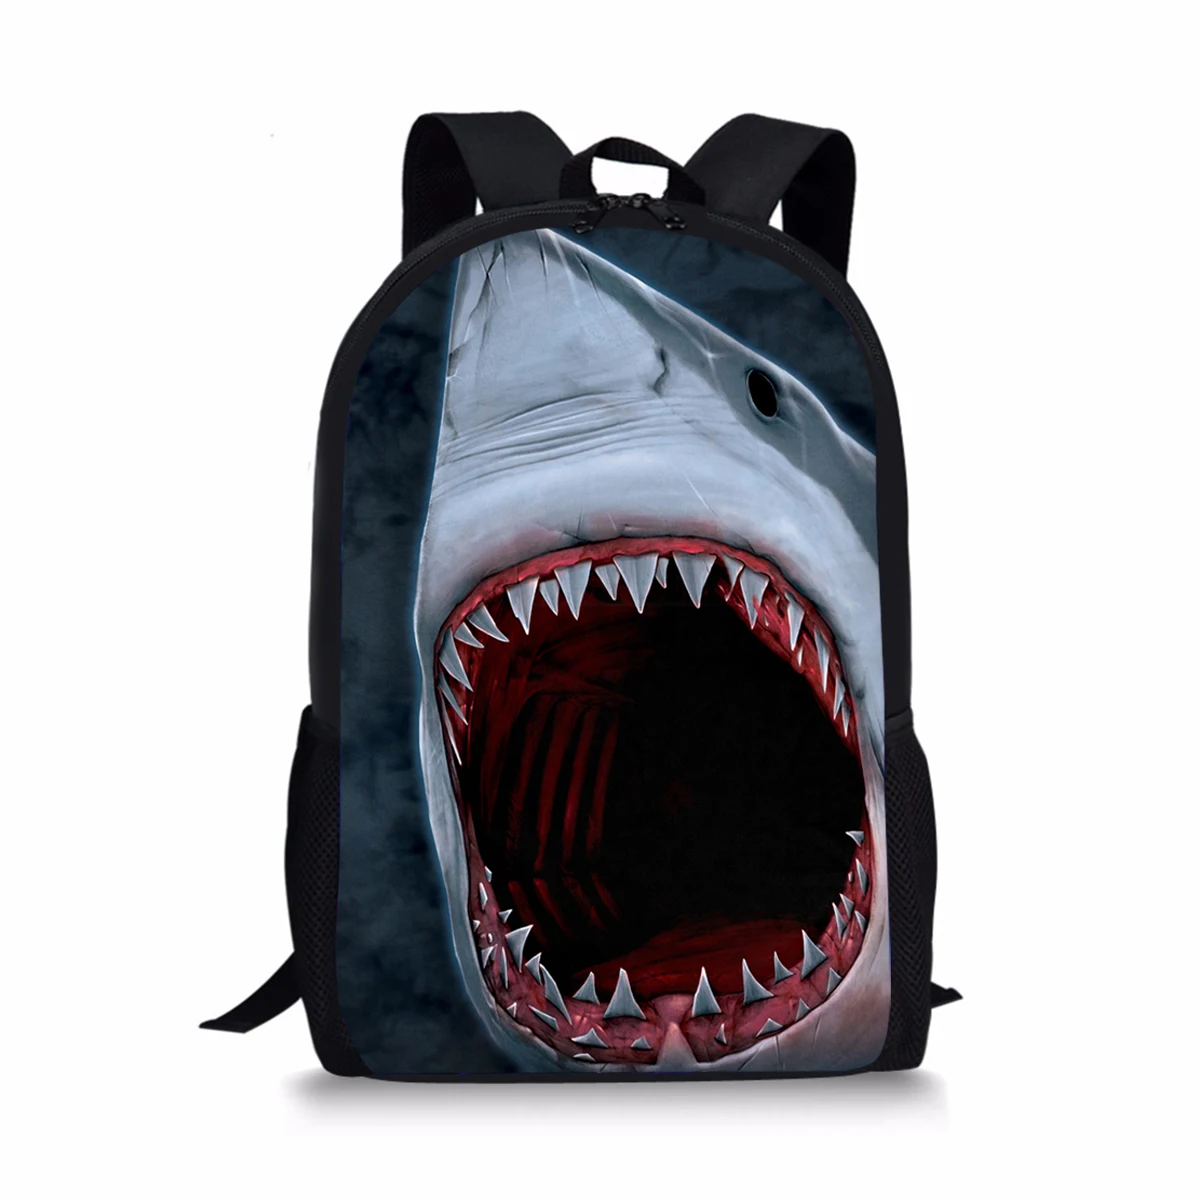 "Рюкзак с принтом акулы для детей, модная школьная сумка на плечо для девочек-подростков, детские дорожные ранцы"